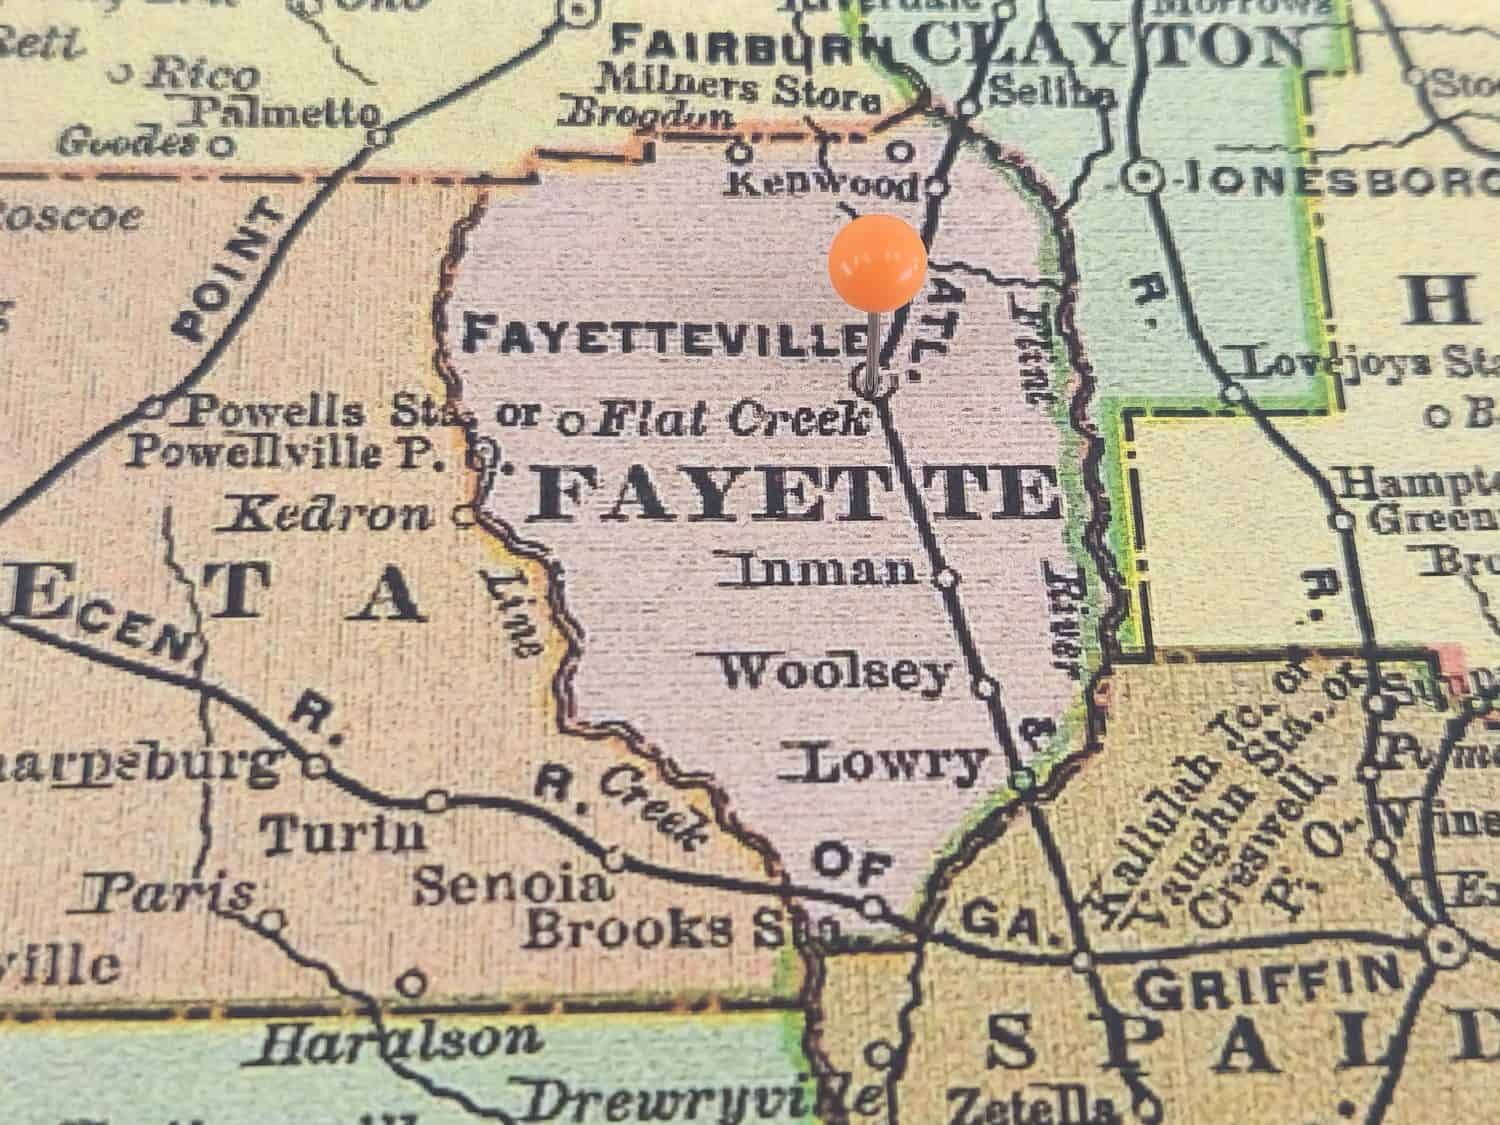 Contea di Fayette, Georgia, contrassegnata da una virata arancione su una colorata mappa vintage.  Il capoluogo della contea si trova nella città di Fayetteville, GA.